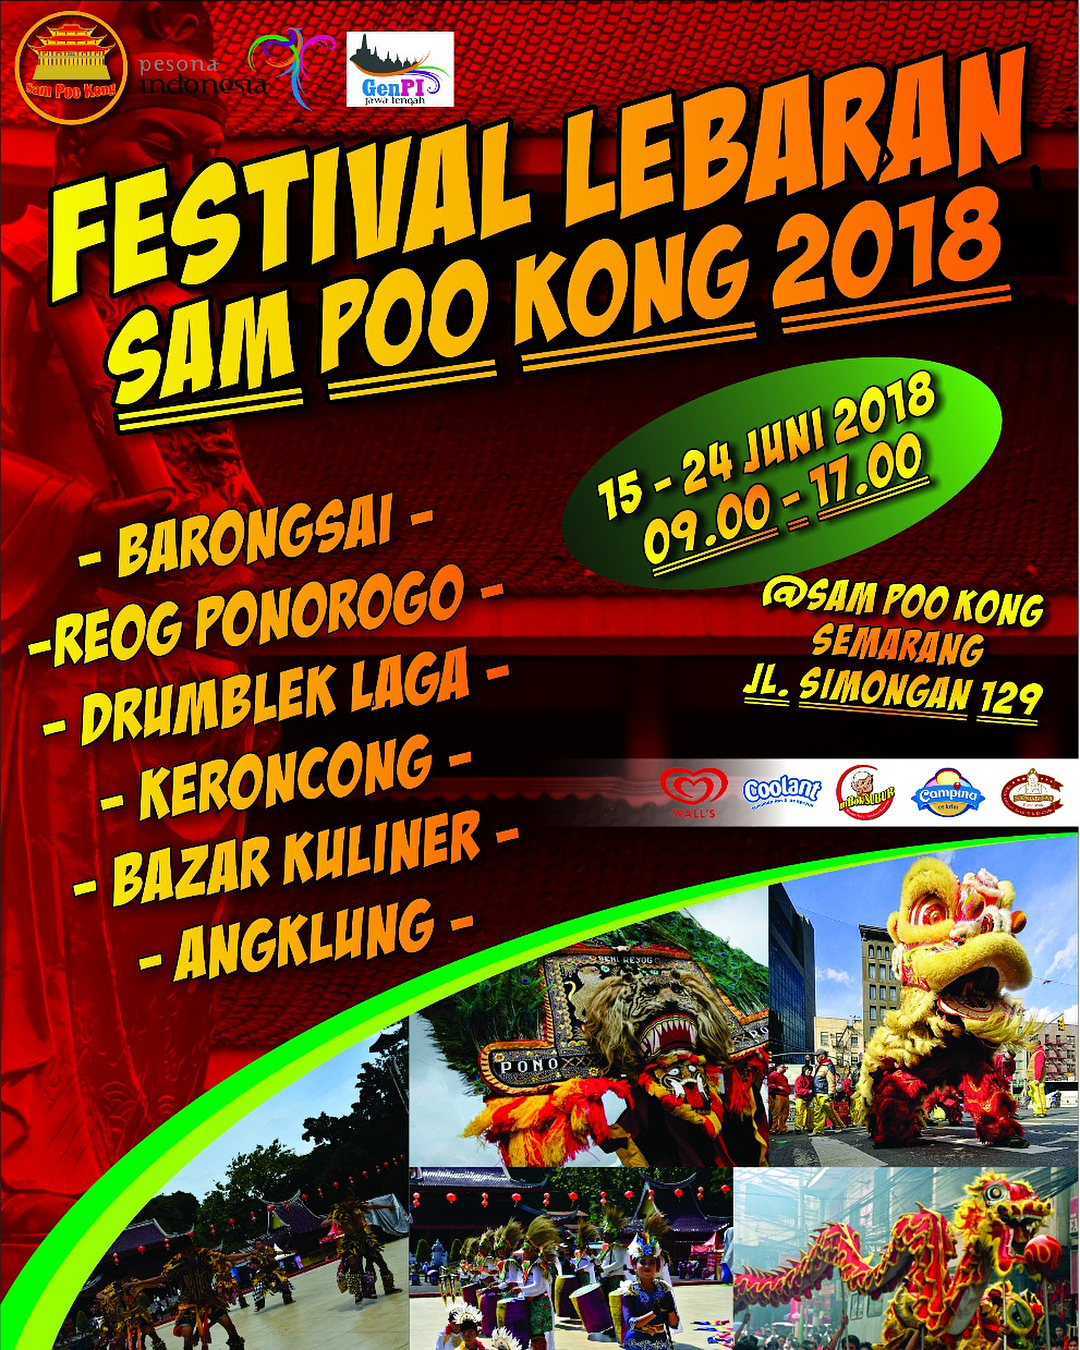 EVENT SEMARANG - FESTIVAL LEBARAN SAM POO KONG 2018